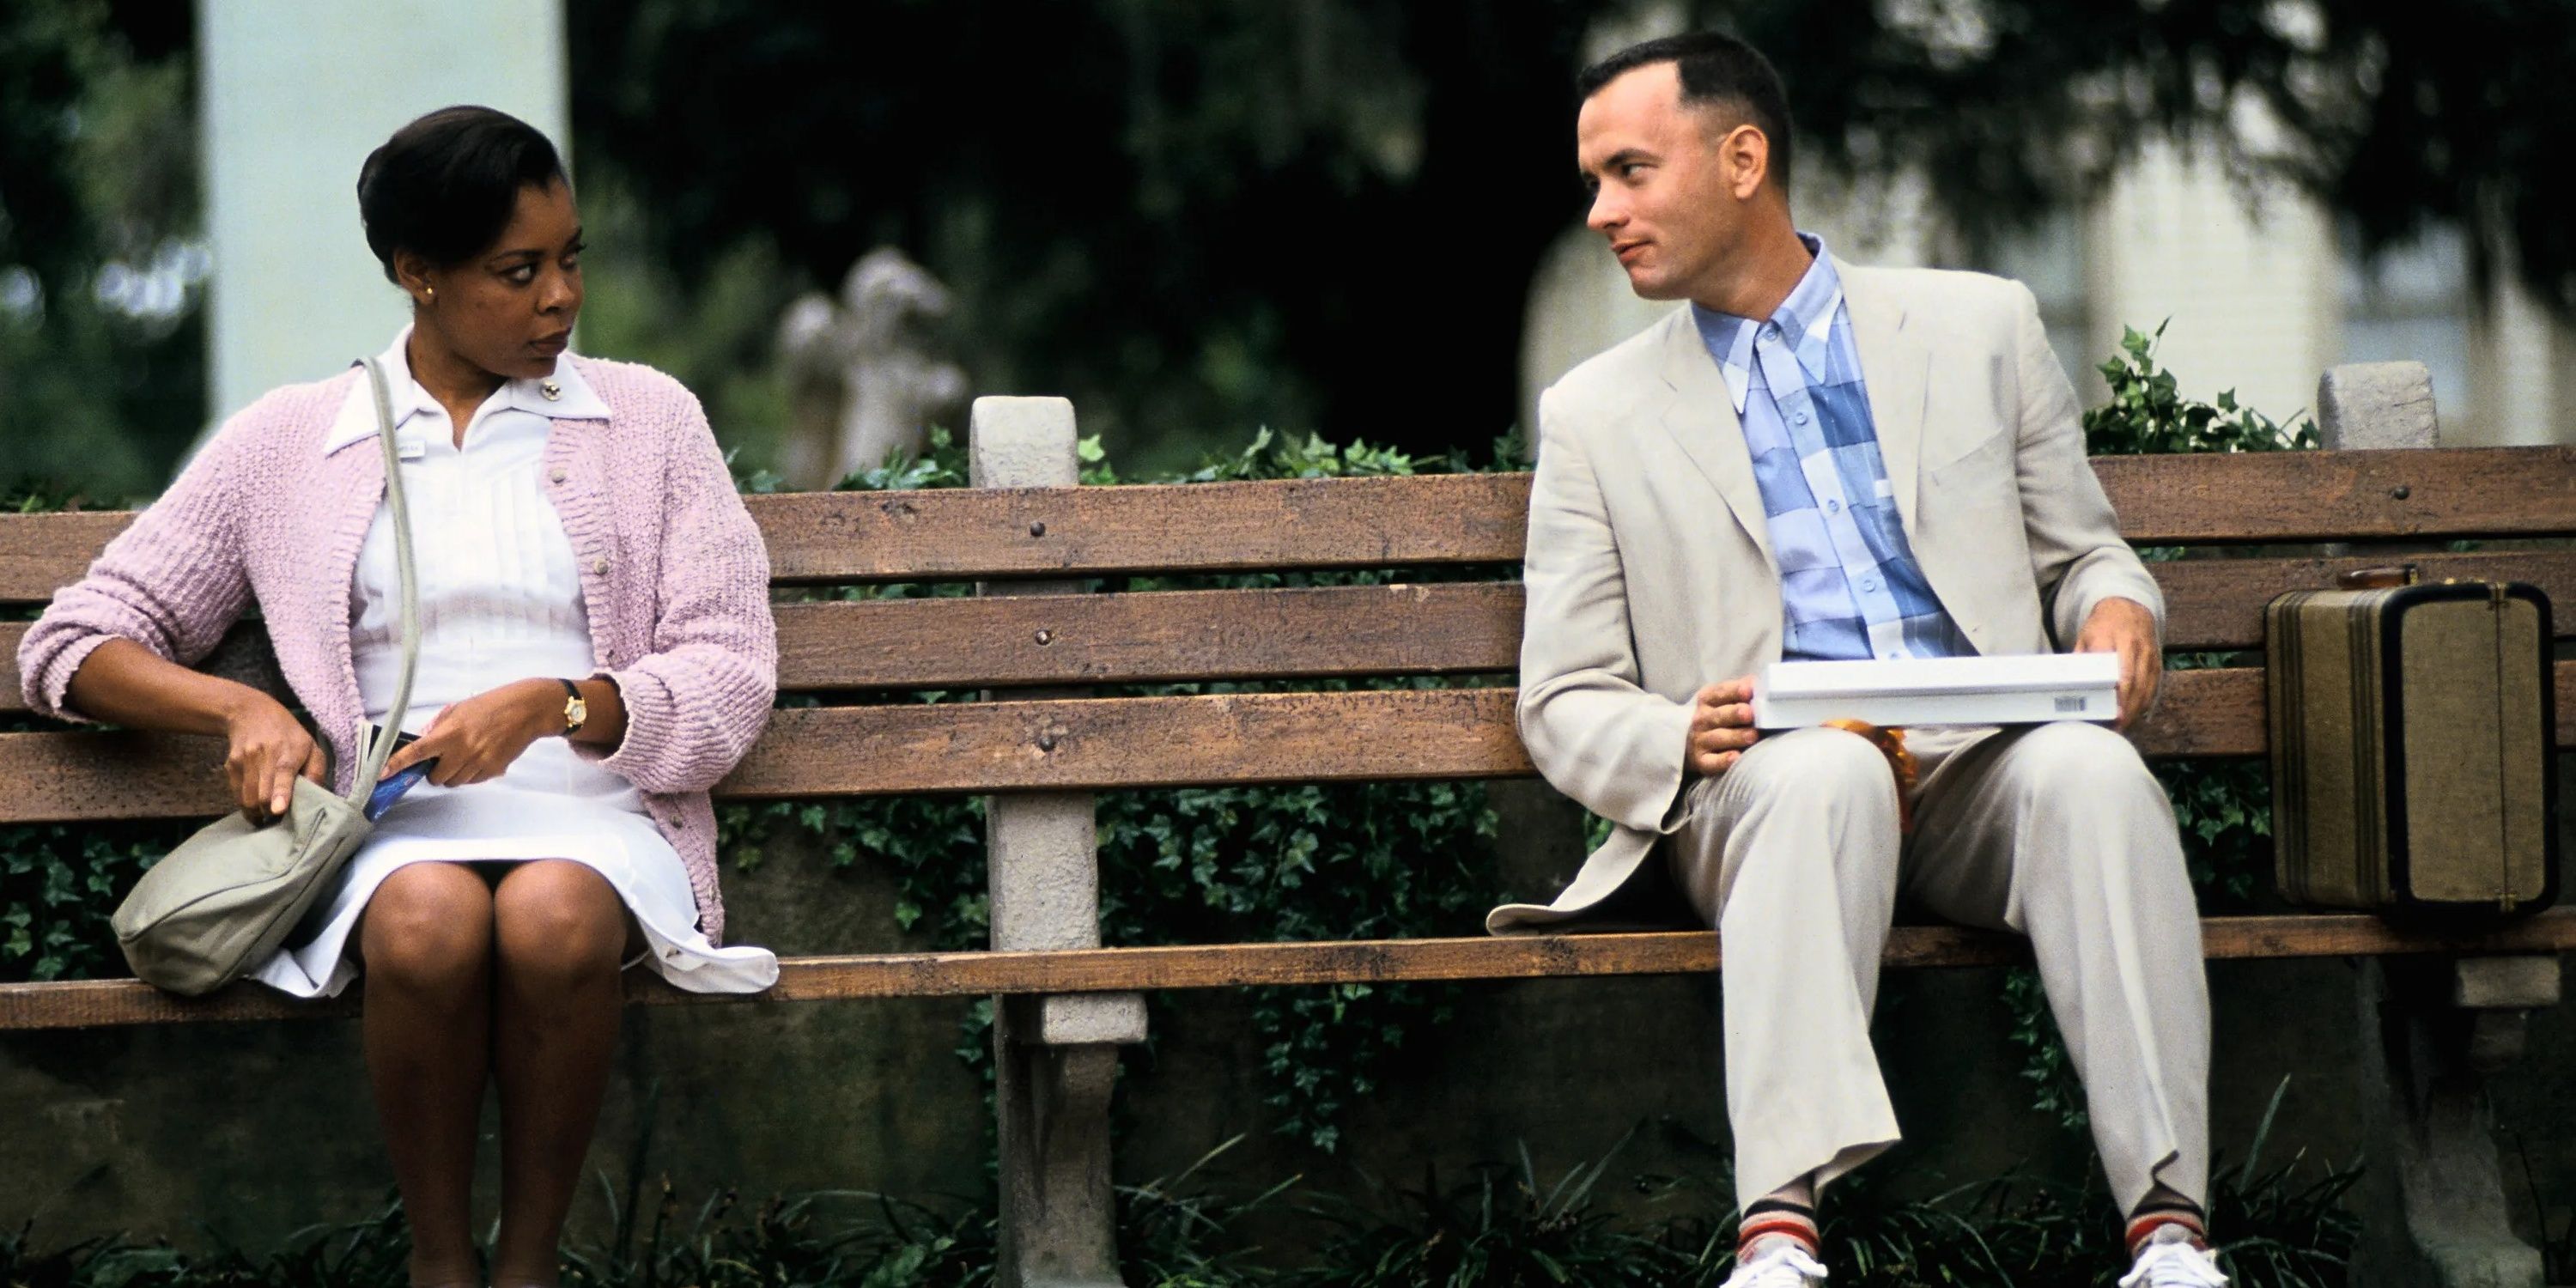 Tom Hanks como Forrest Gump conversando com o estranho no banco